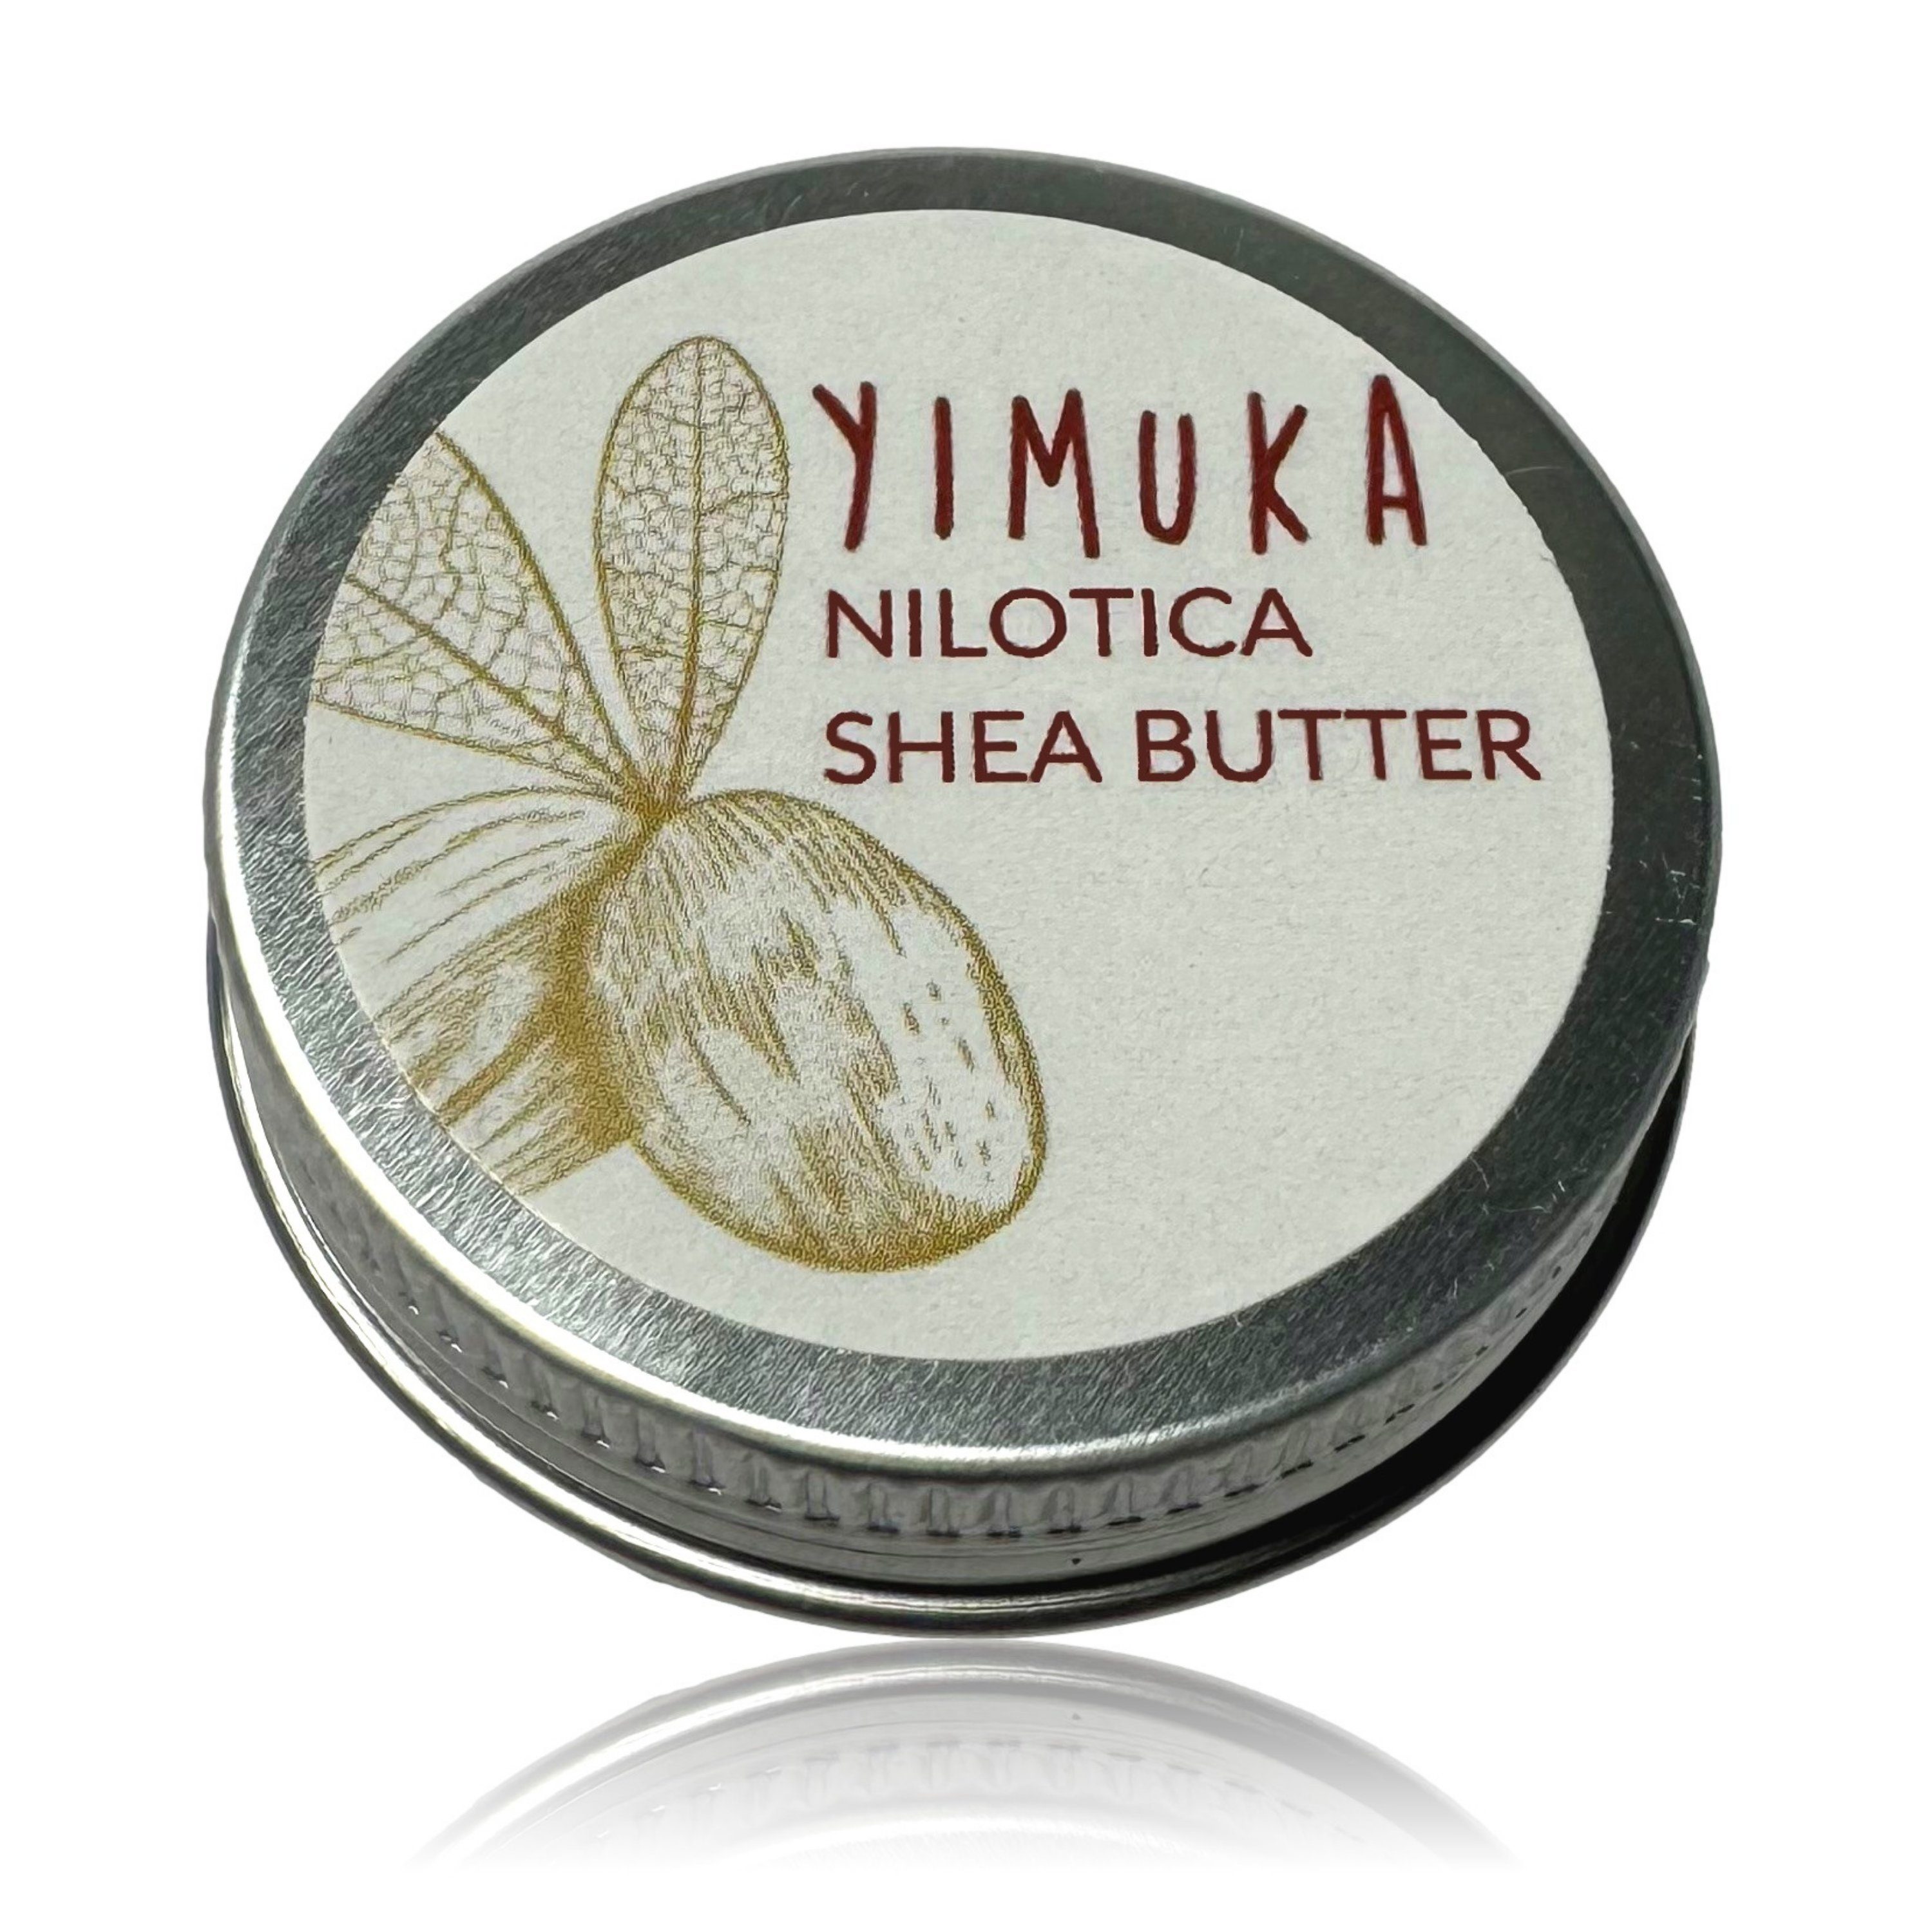 Sheabutter Kaltgepresst Yimuka - Fair Bio, Reine Feuchtigkeitscreme Trade Unraffiniert, Nilotica